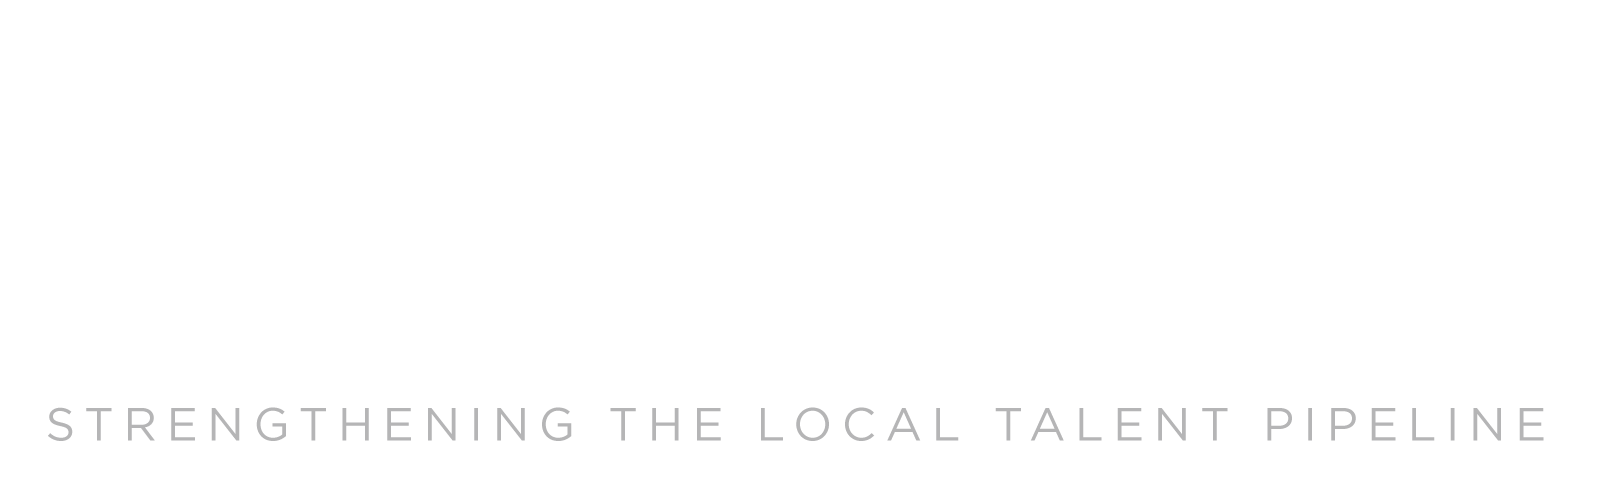 WORK-Together-ROC-Logo-For-Dark-Background